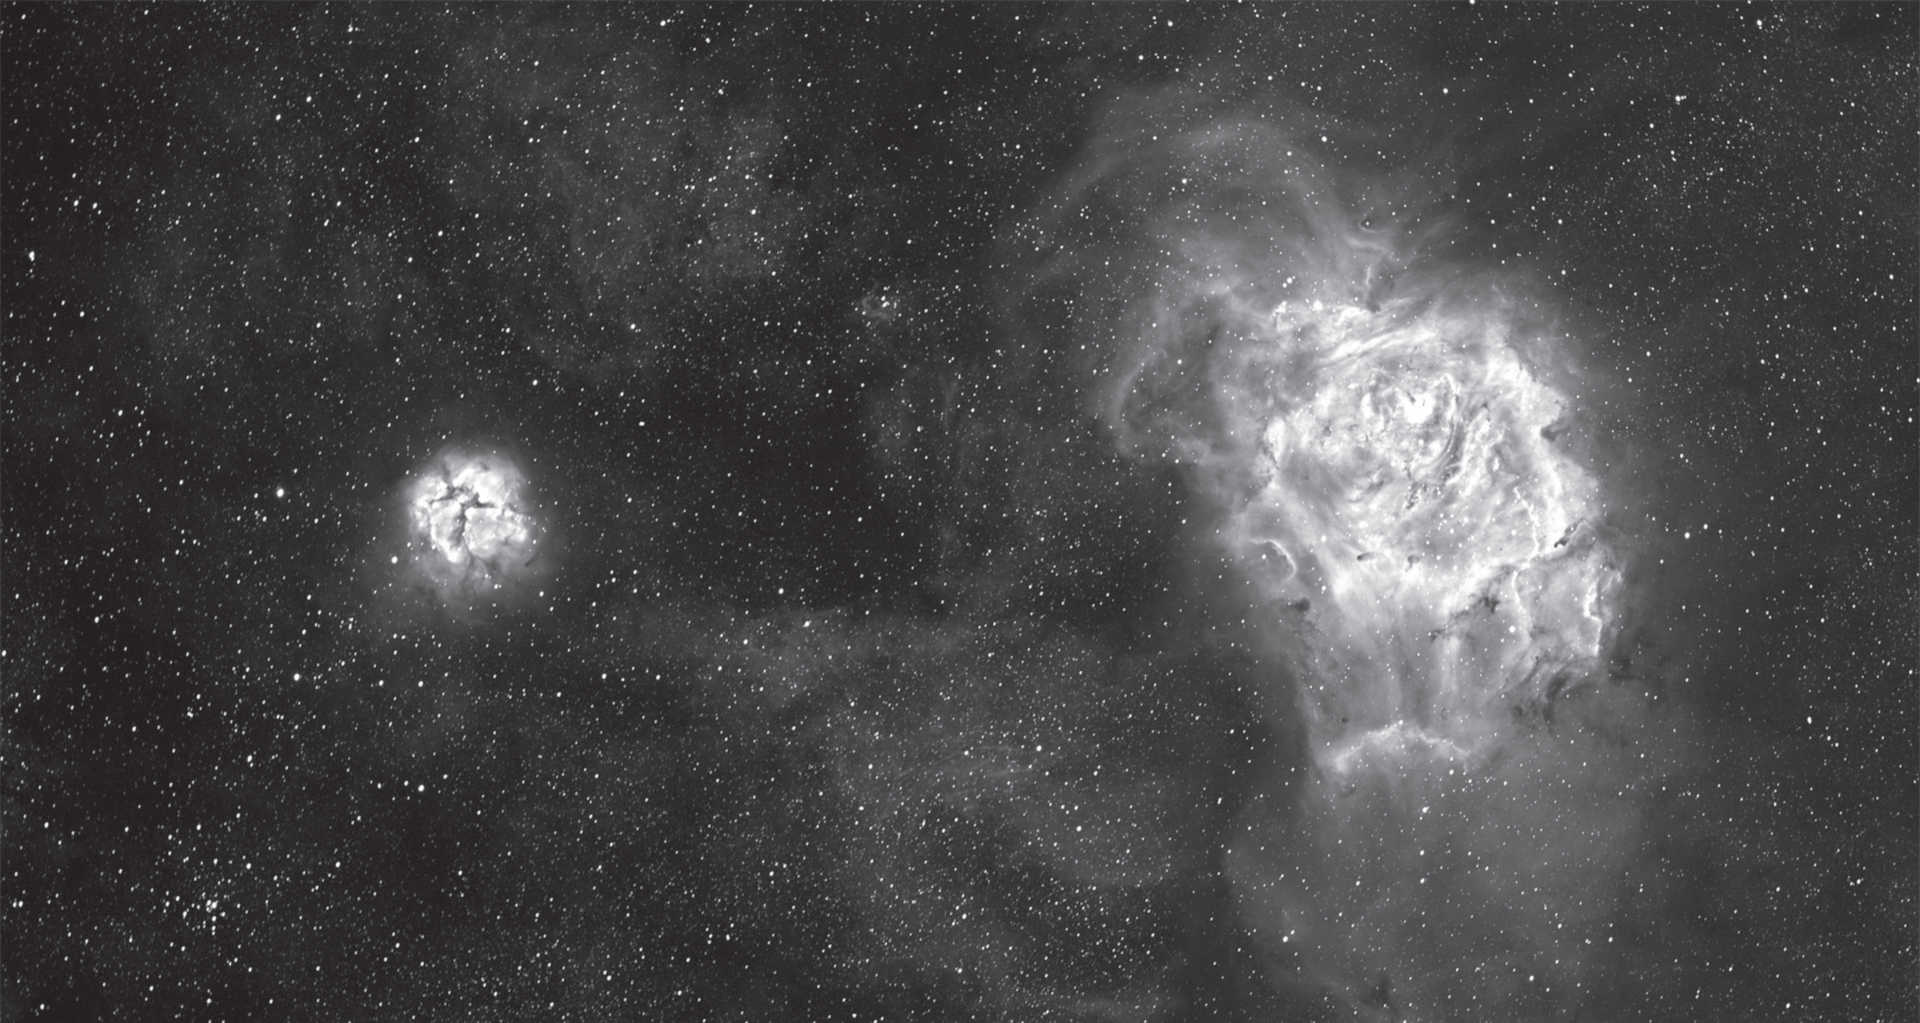 Mgławica Laguna i mgławica Trójlistna Koniczyna (M8 i M20) w gwiazdozbiorze Strzelca. Obraz sumaryczny składa się z sześciu ekspozycji o czasie ekspozycji 1 minuta każda, sześciu ekspozycji o czasie naświetlania 15 minut każda, oraz dwóch ekspozycji o czasie naświetlania 60 minut każda. Kamera: SBIG STF-8300, filtr Hα 35nm. Teleskop: refraktor 130mm o ogniskowej 1000mm. U. Dittler